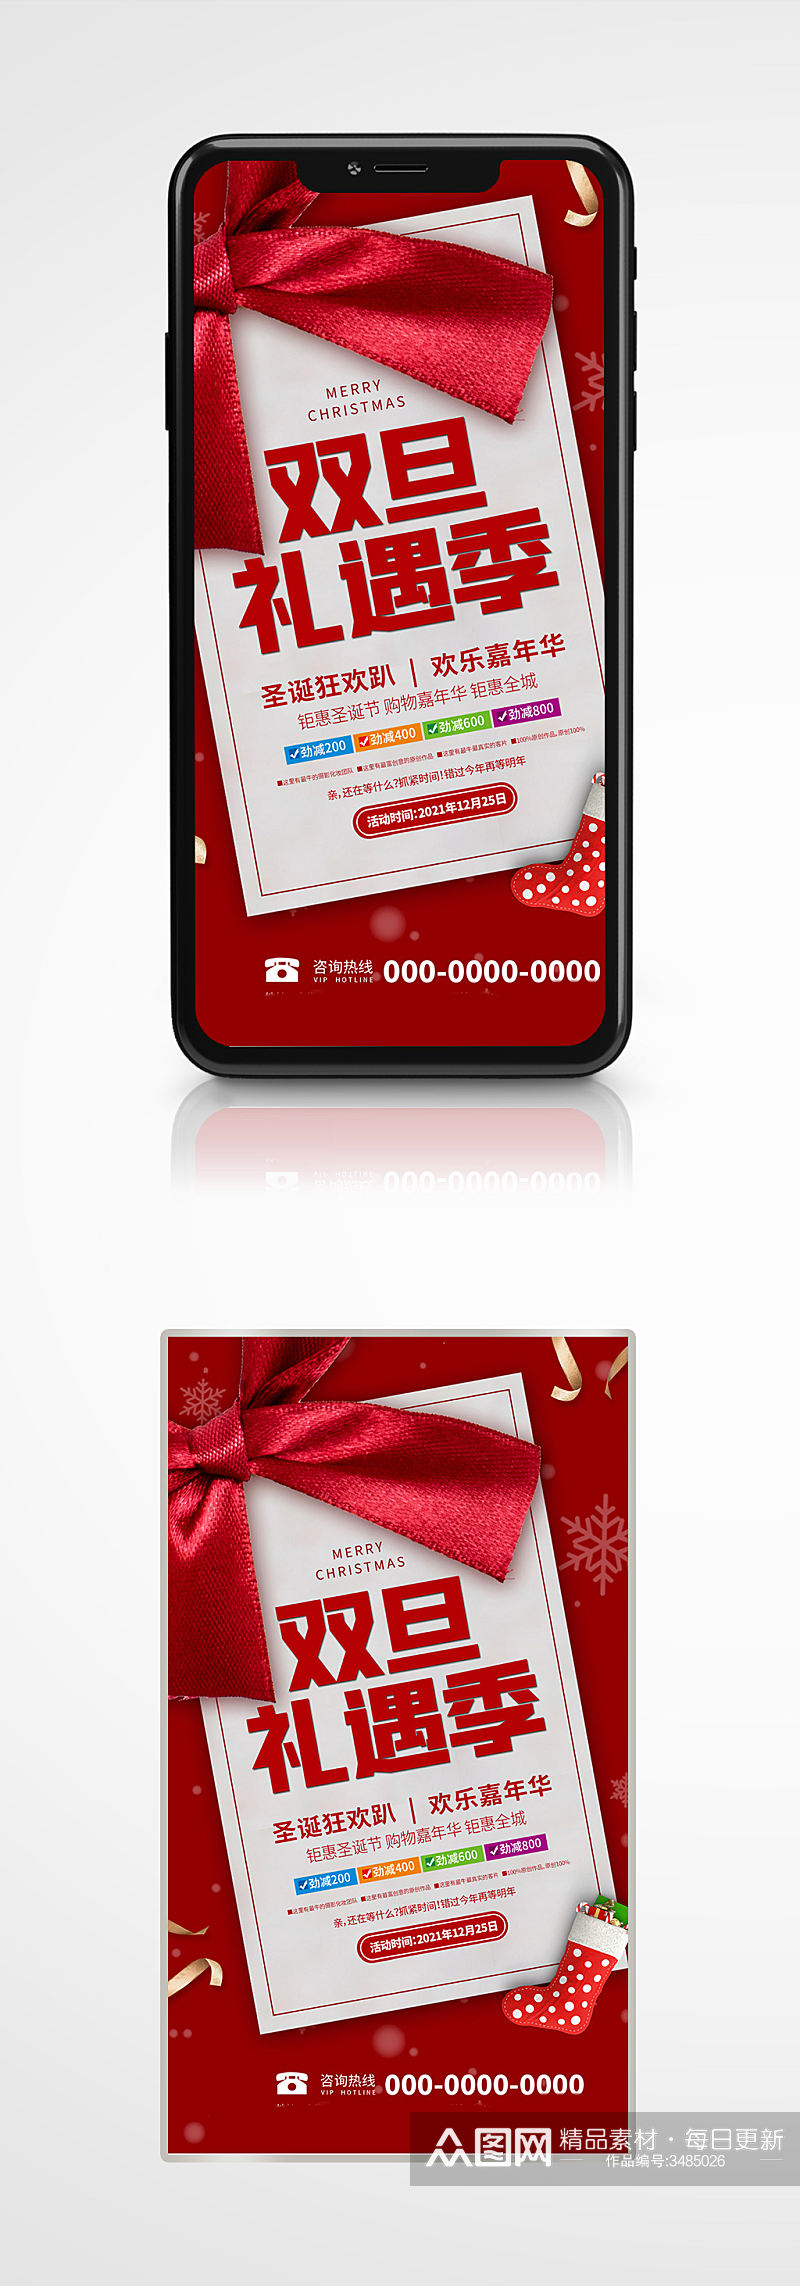 双旦促销宣传手机海报圣诞元旦节日活动素材